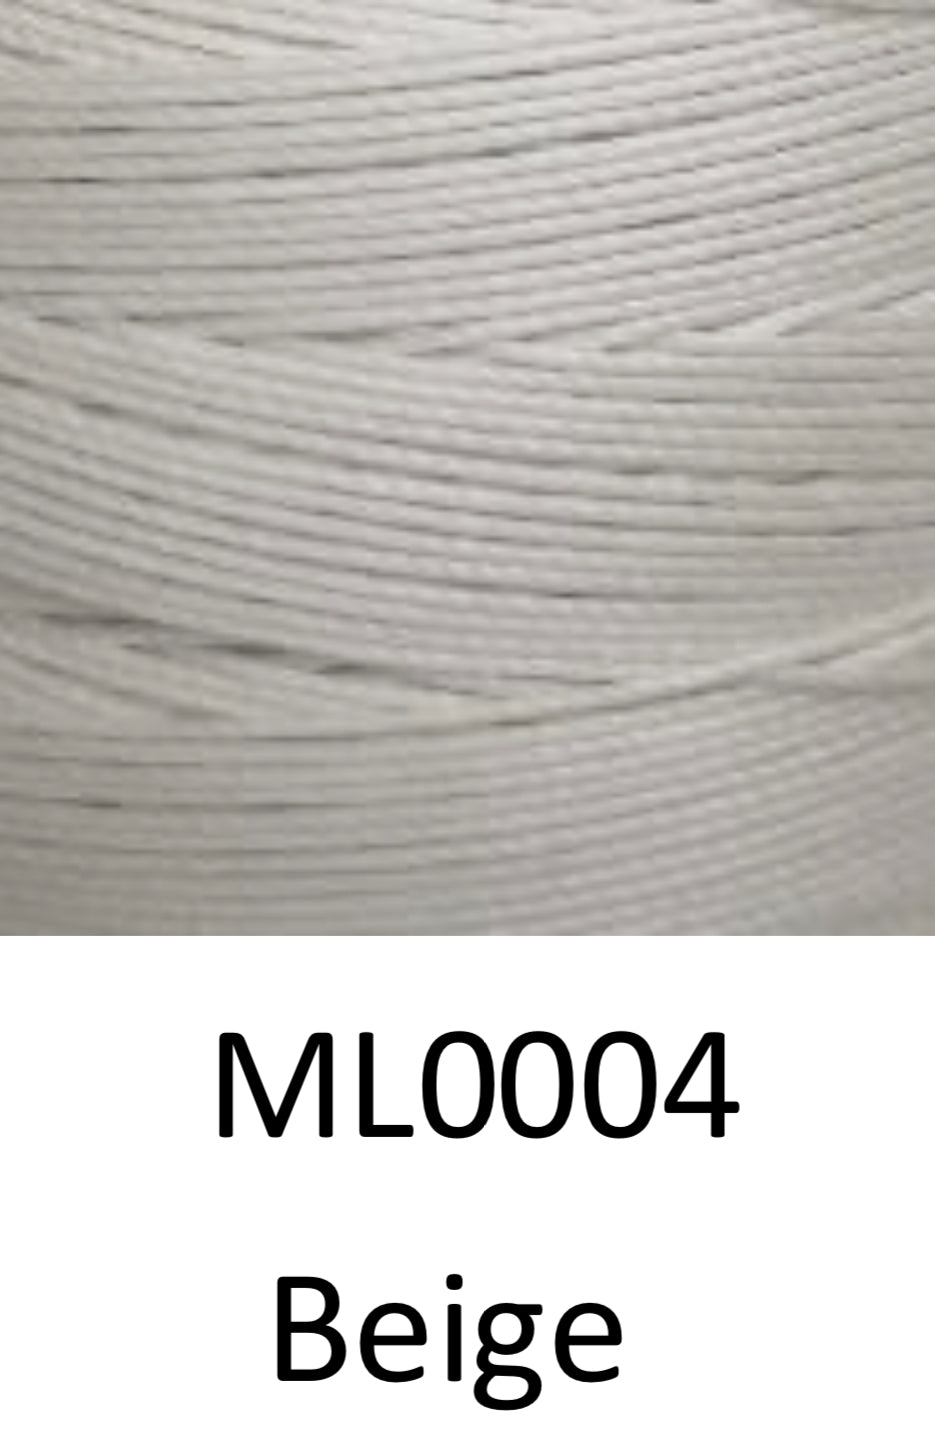 Fil de polyester ciré Xiange Twist | 15# 0,6mm | Bobines de 60 m